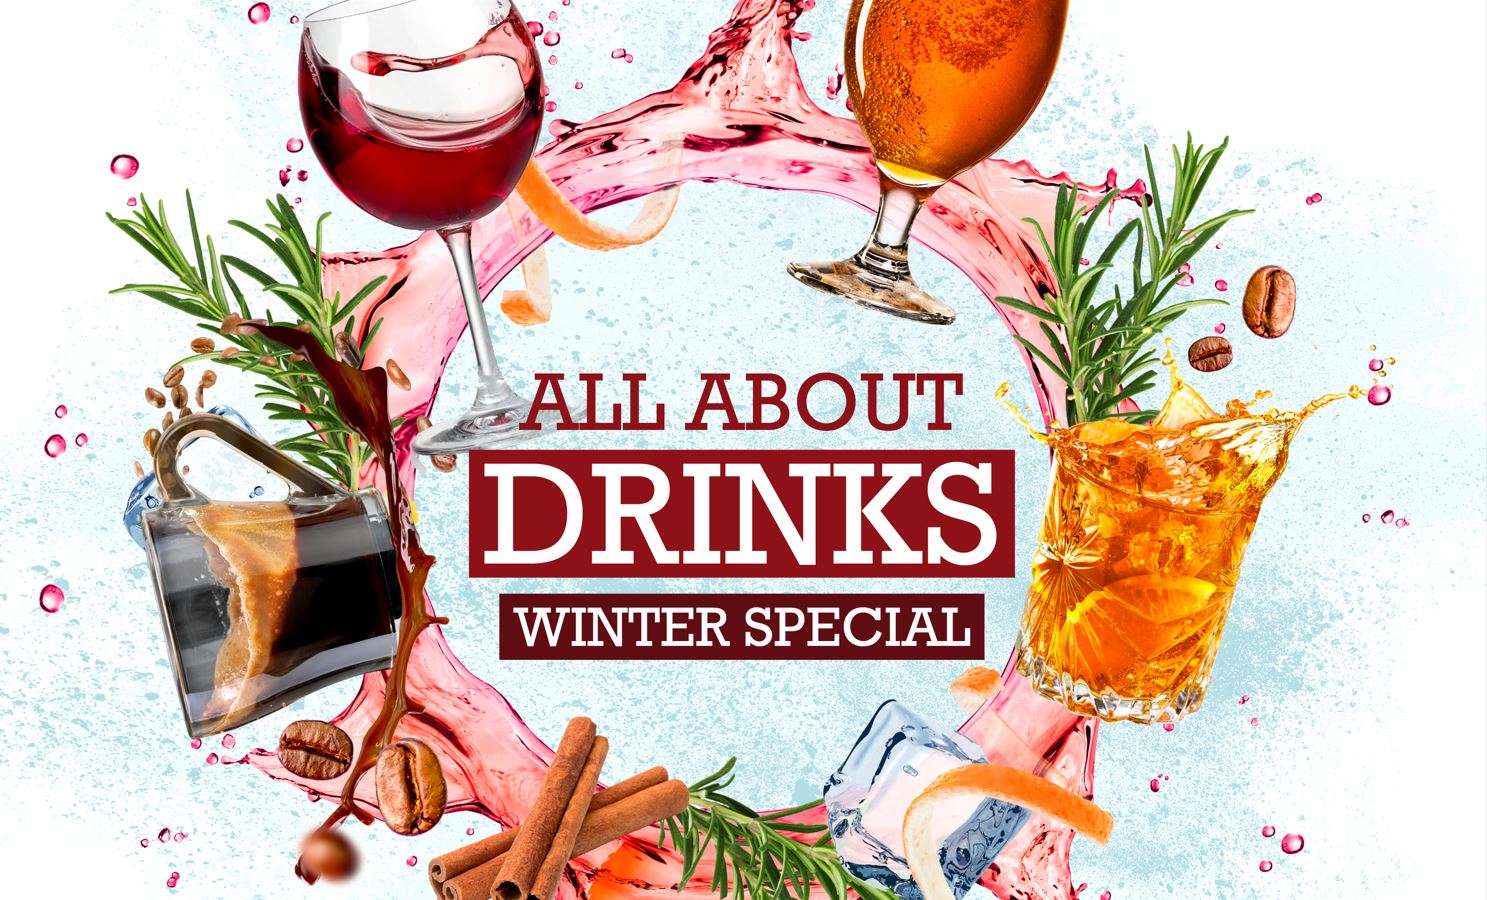 Onderscheidende winterdranken bij ‘All about drinks | Winter special’ van Sligro